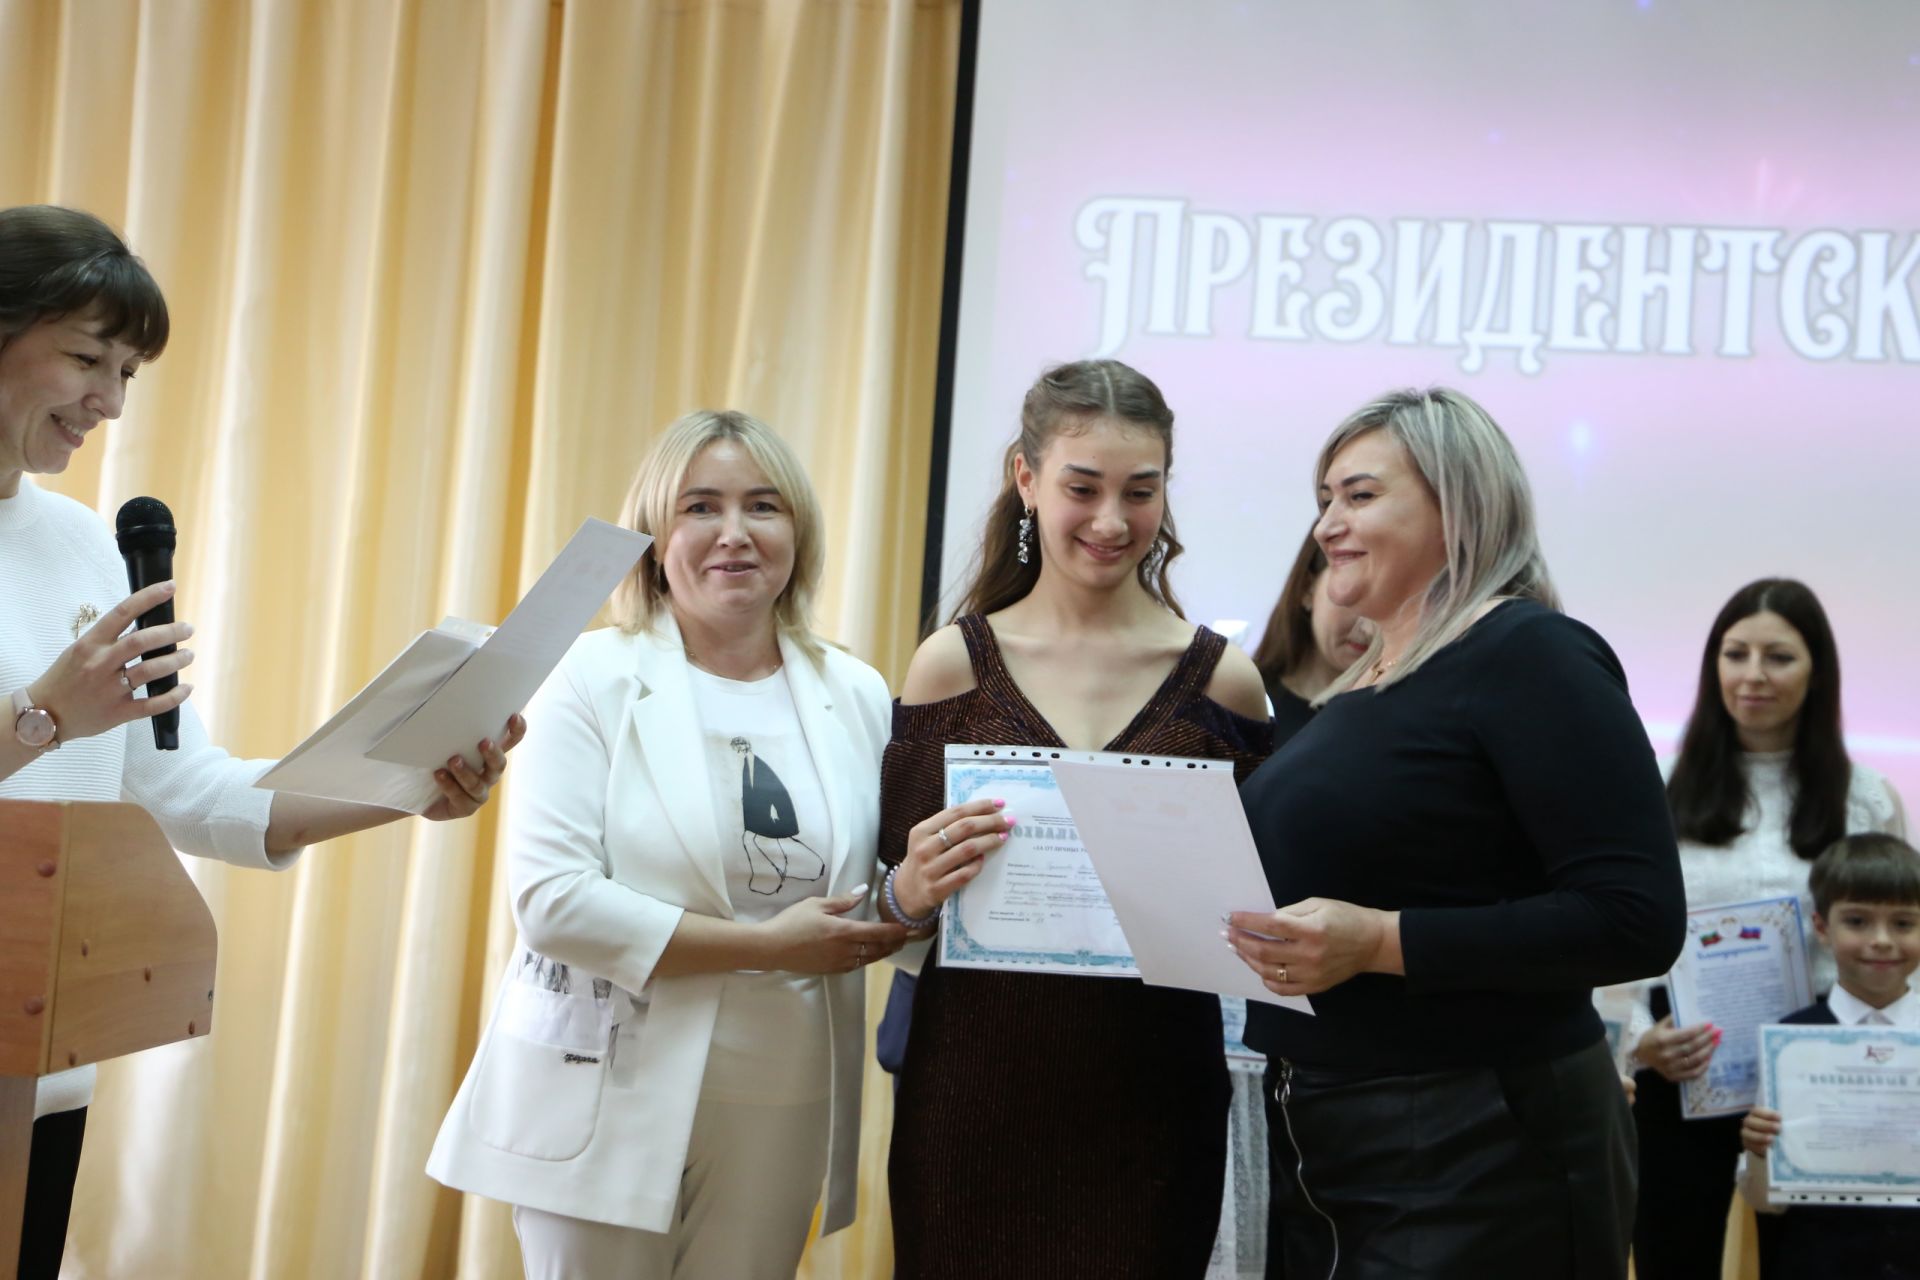 КВН, нижний брейк и море наград: во второй школе Алексеевского состоялся «Президентский бал»